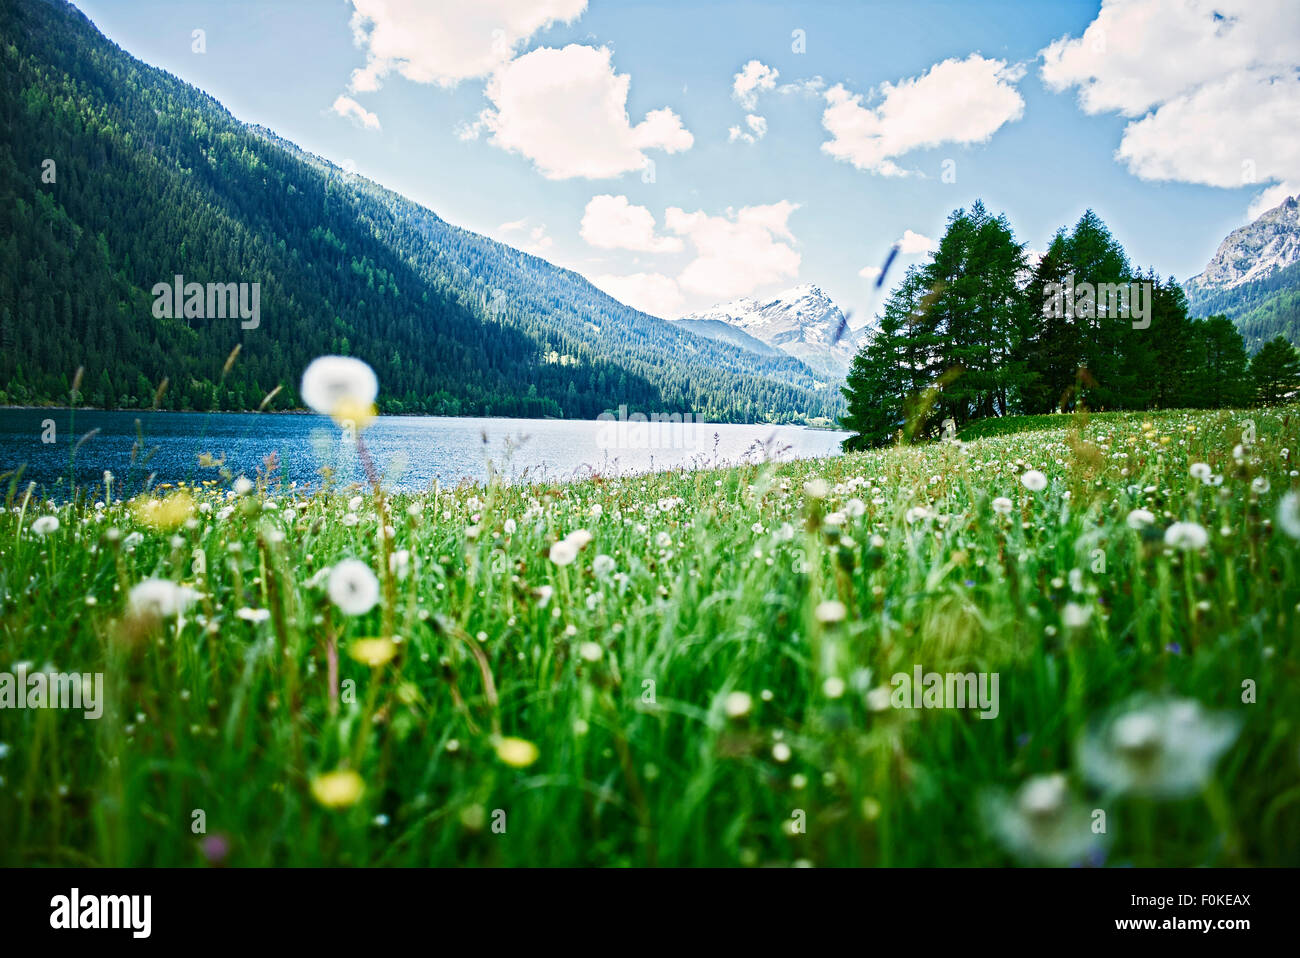 Schweiz, Graubünden, Sufers, Alpen, Blumenwiese am See Stockfotografie -  Alamy